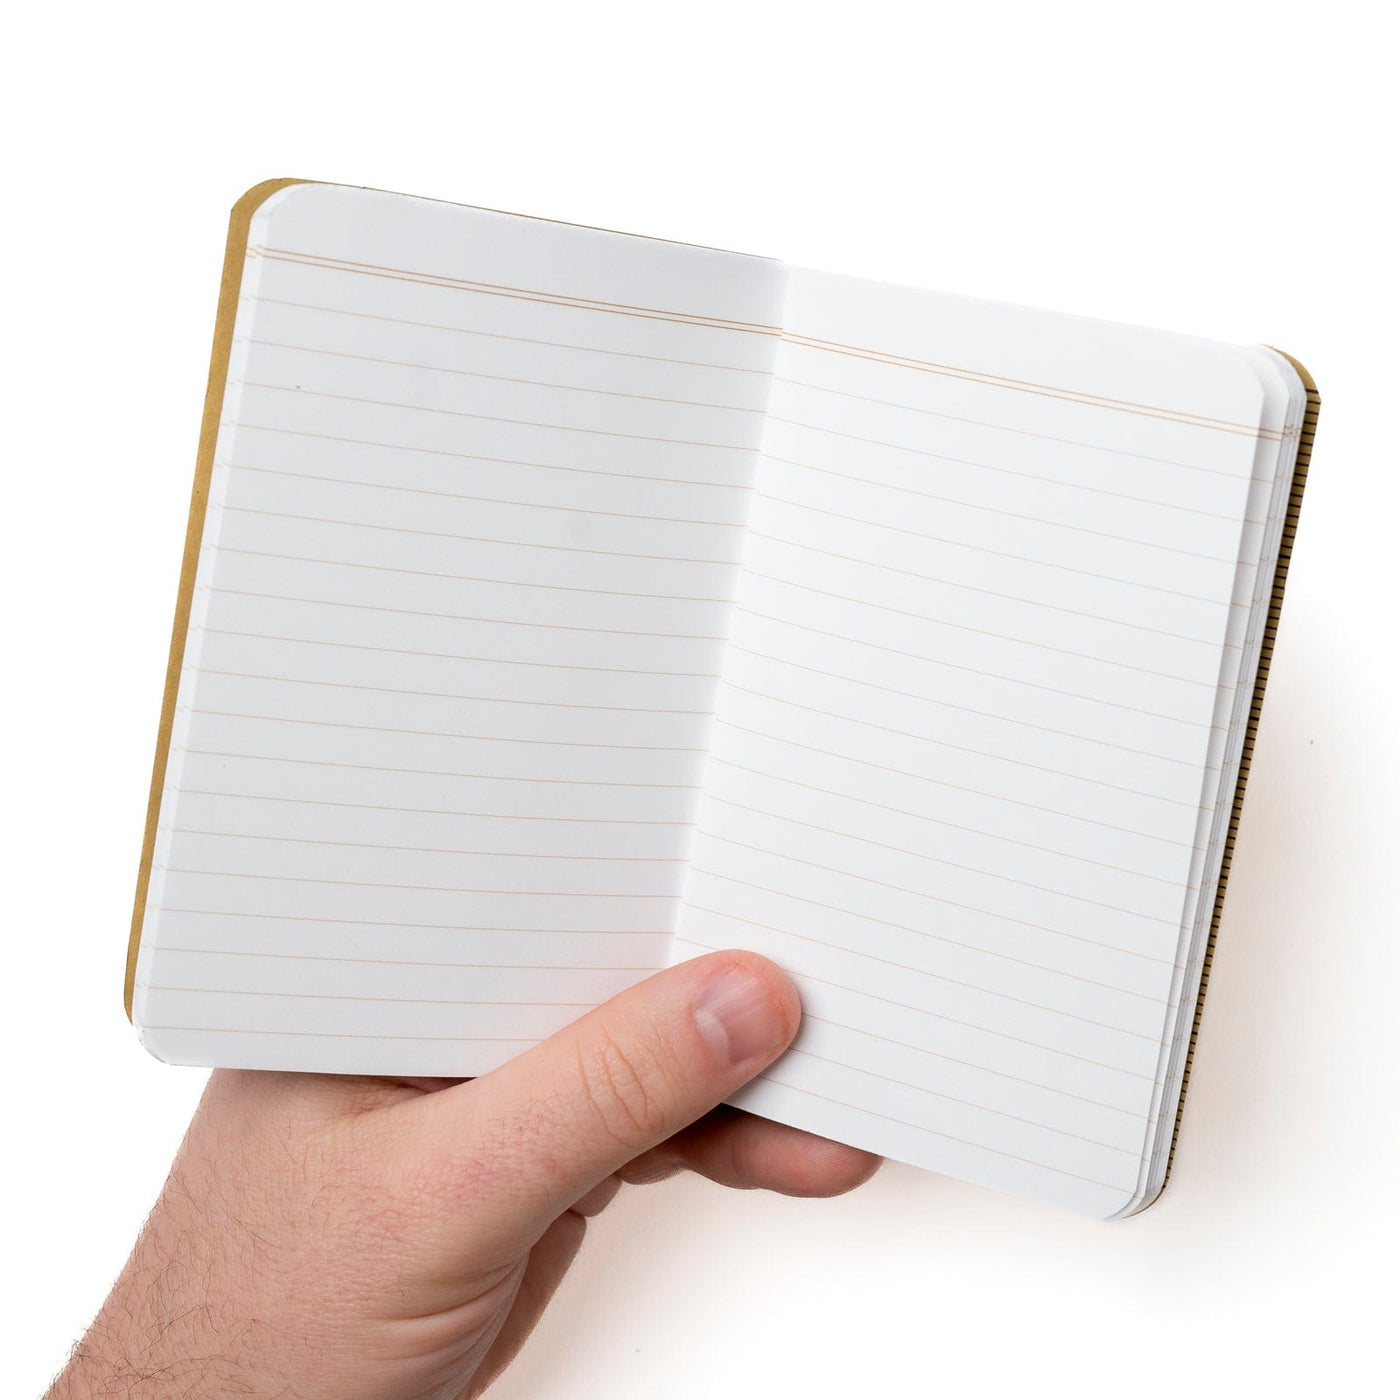 Field Notes Notebooks - Original Kraft Field Notes